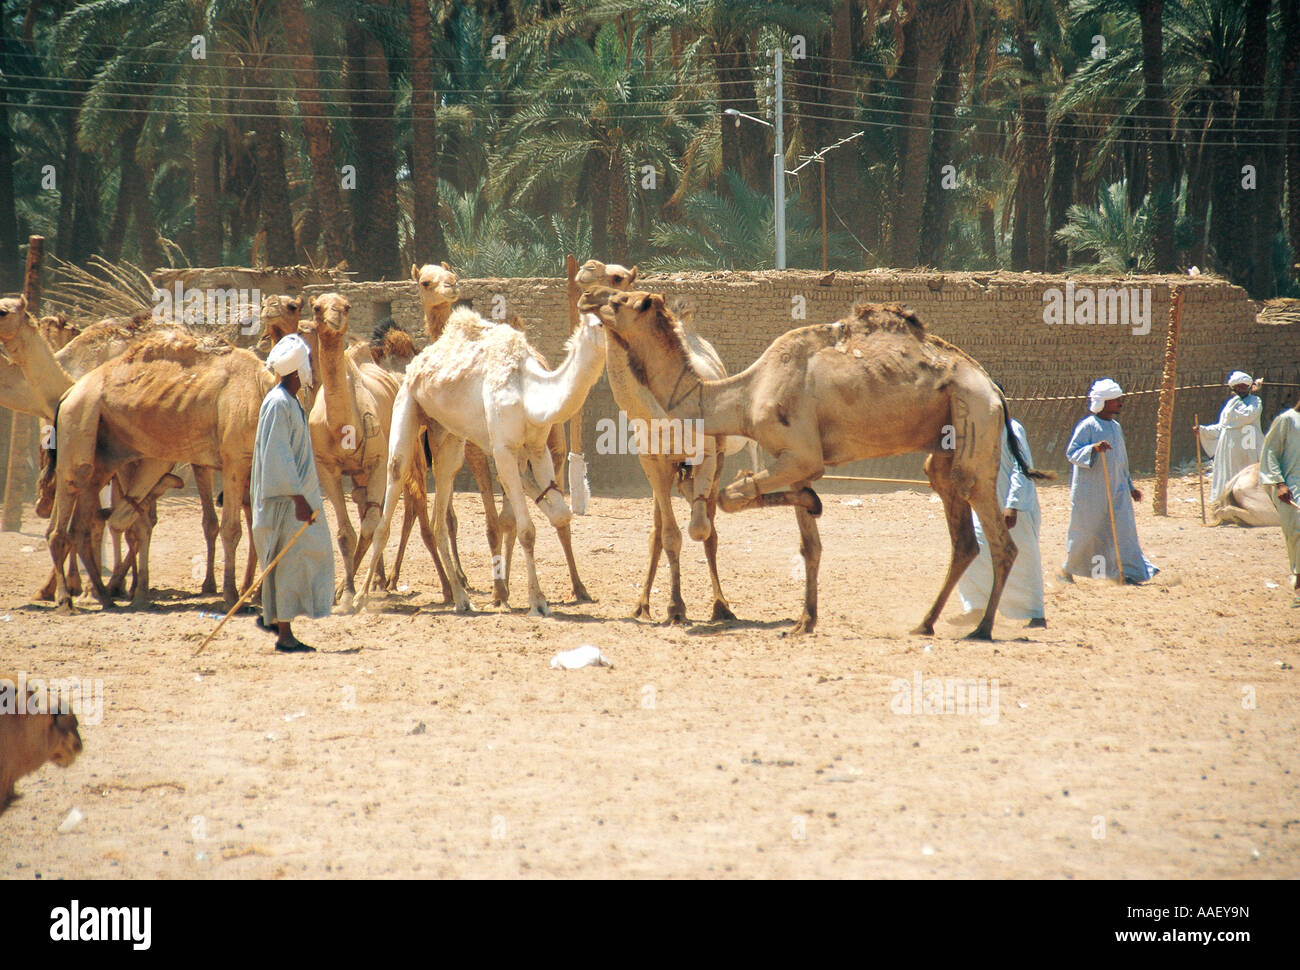 Los Camellos para la venta nota una pierna atada para restringir el movimiento de mercado de camellos en el alto Egipto Foto de stock